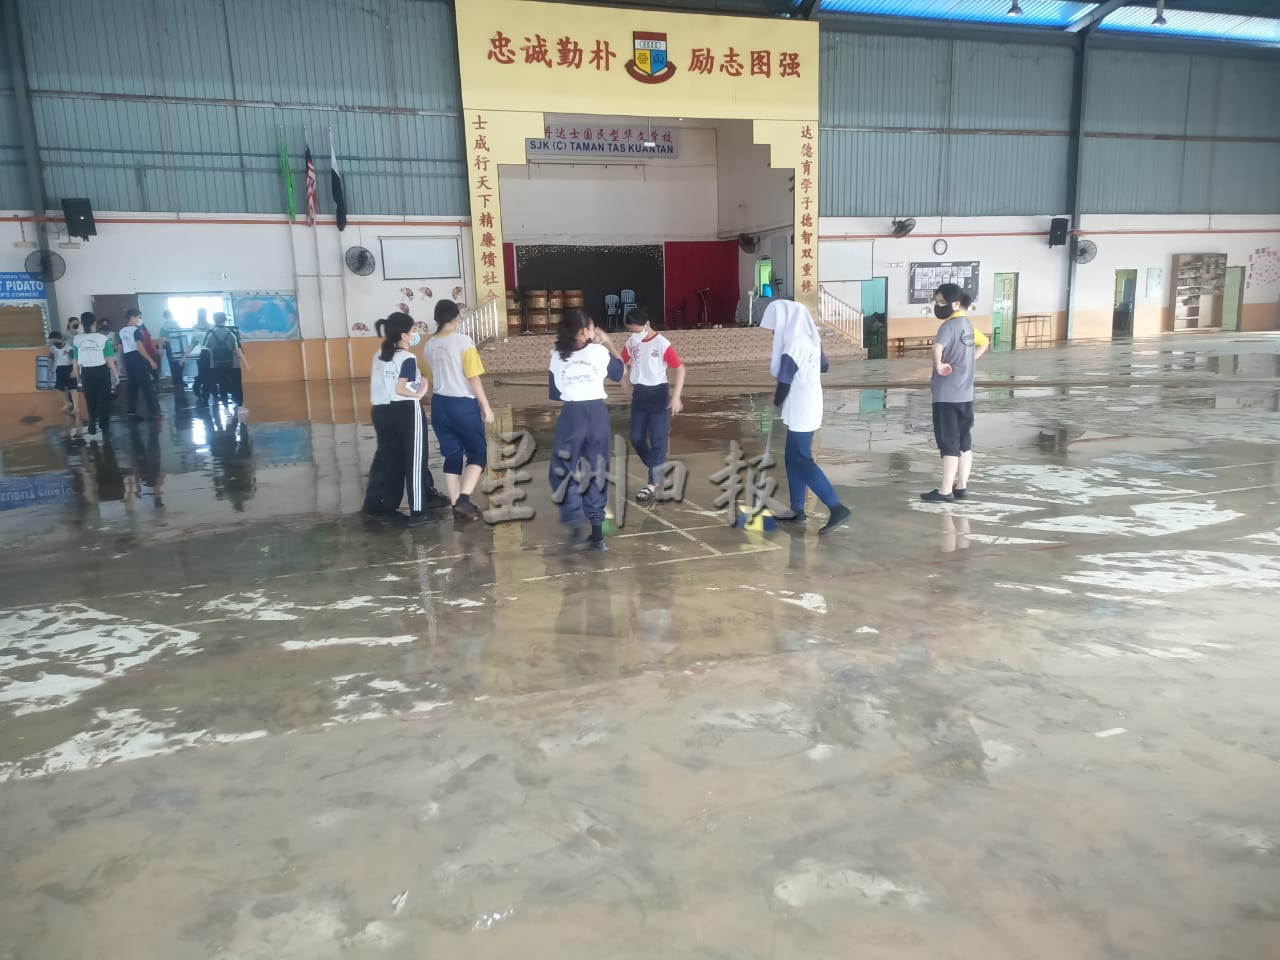 东：关丹达士华小因下雨淹水，导致水淹1呎，120名师生花费4小时为校园进行清理工作，以让小六生可以顺利在周六于淹水的礼堂进行毕业礼。